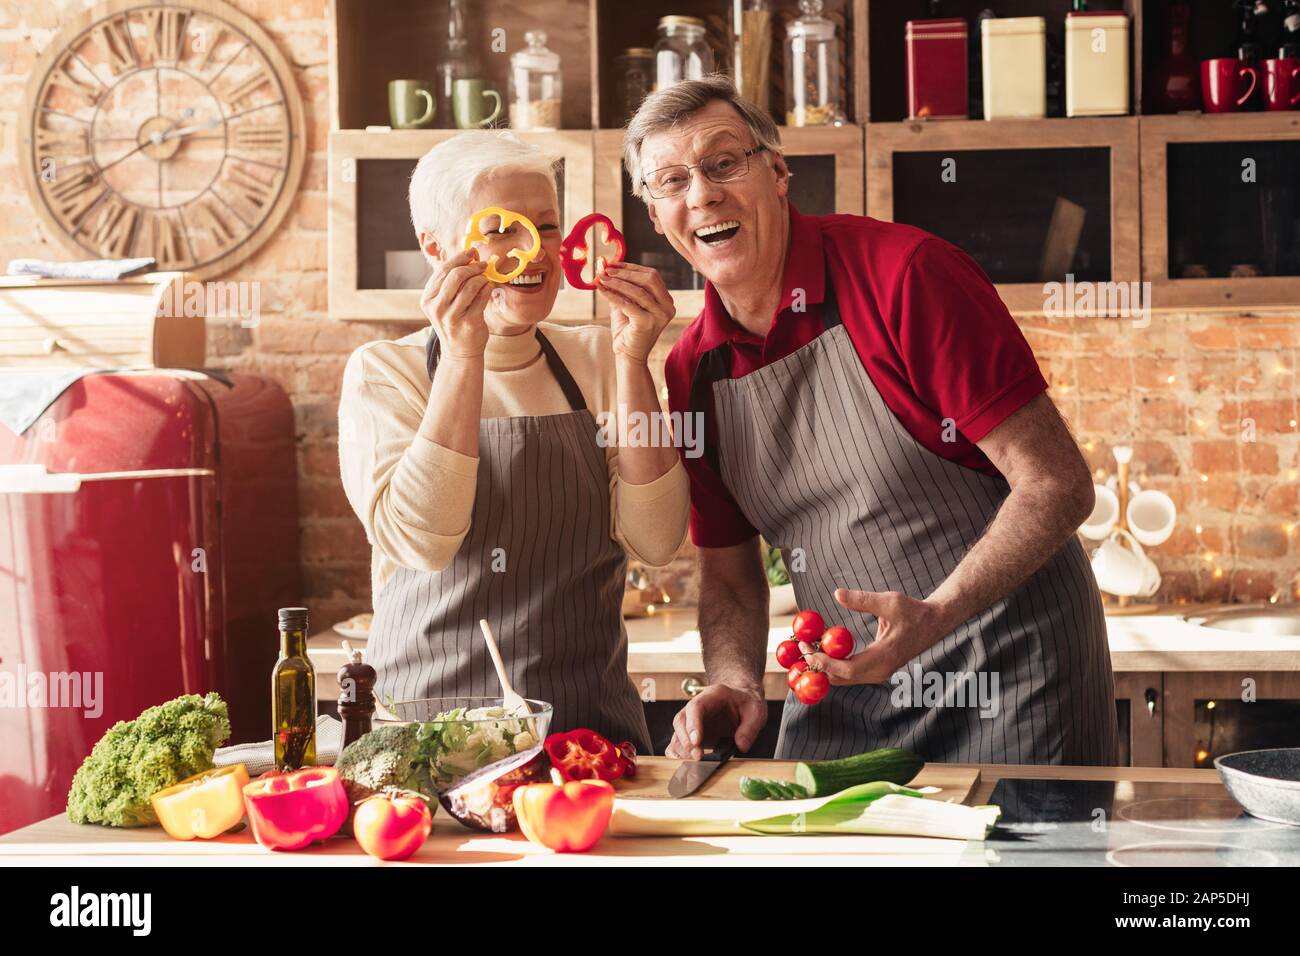 Coppia senior che gioca con verdure fresche in cucina Foto Stock